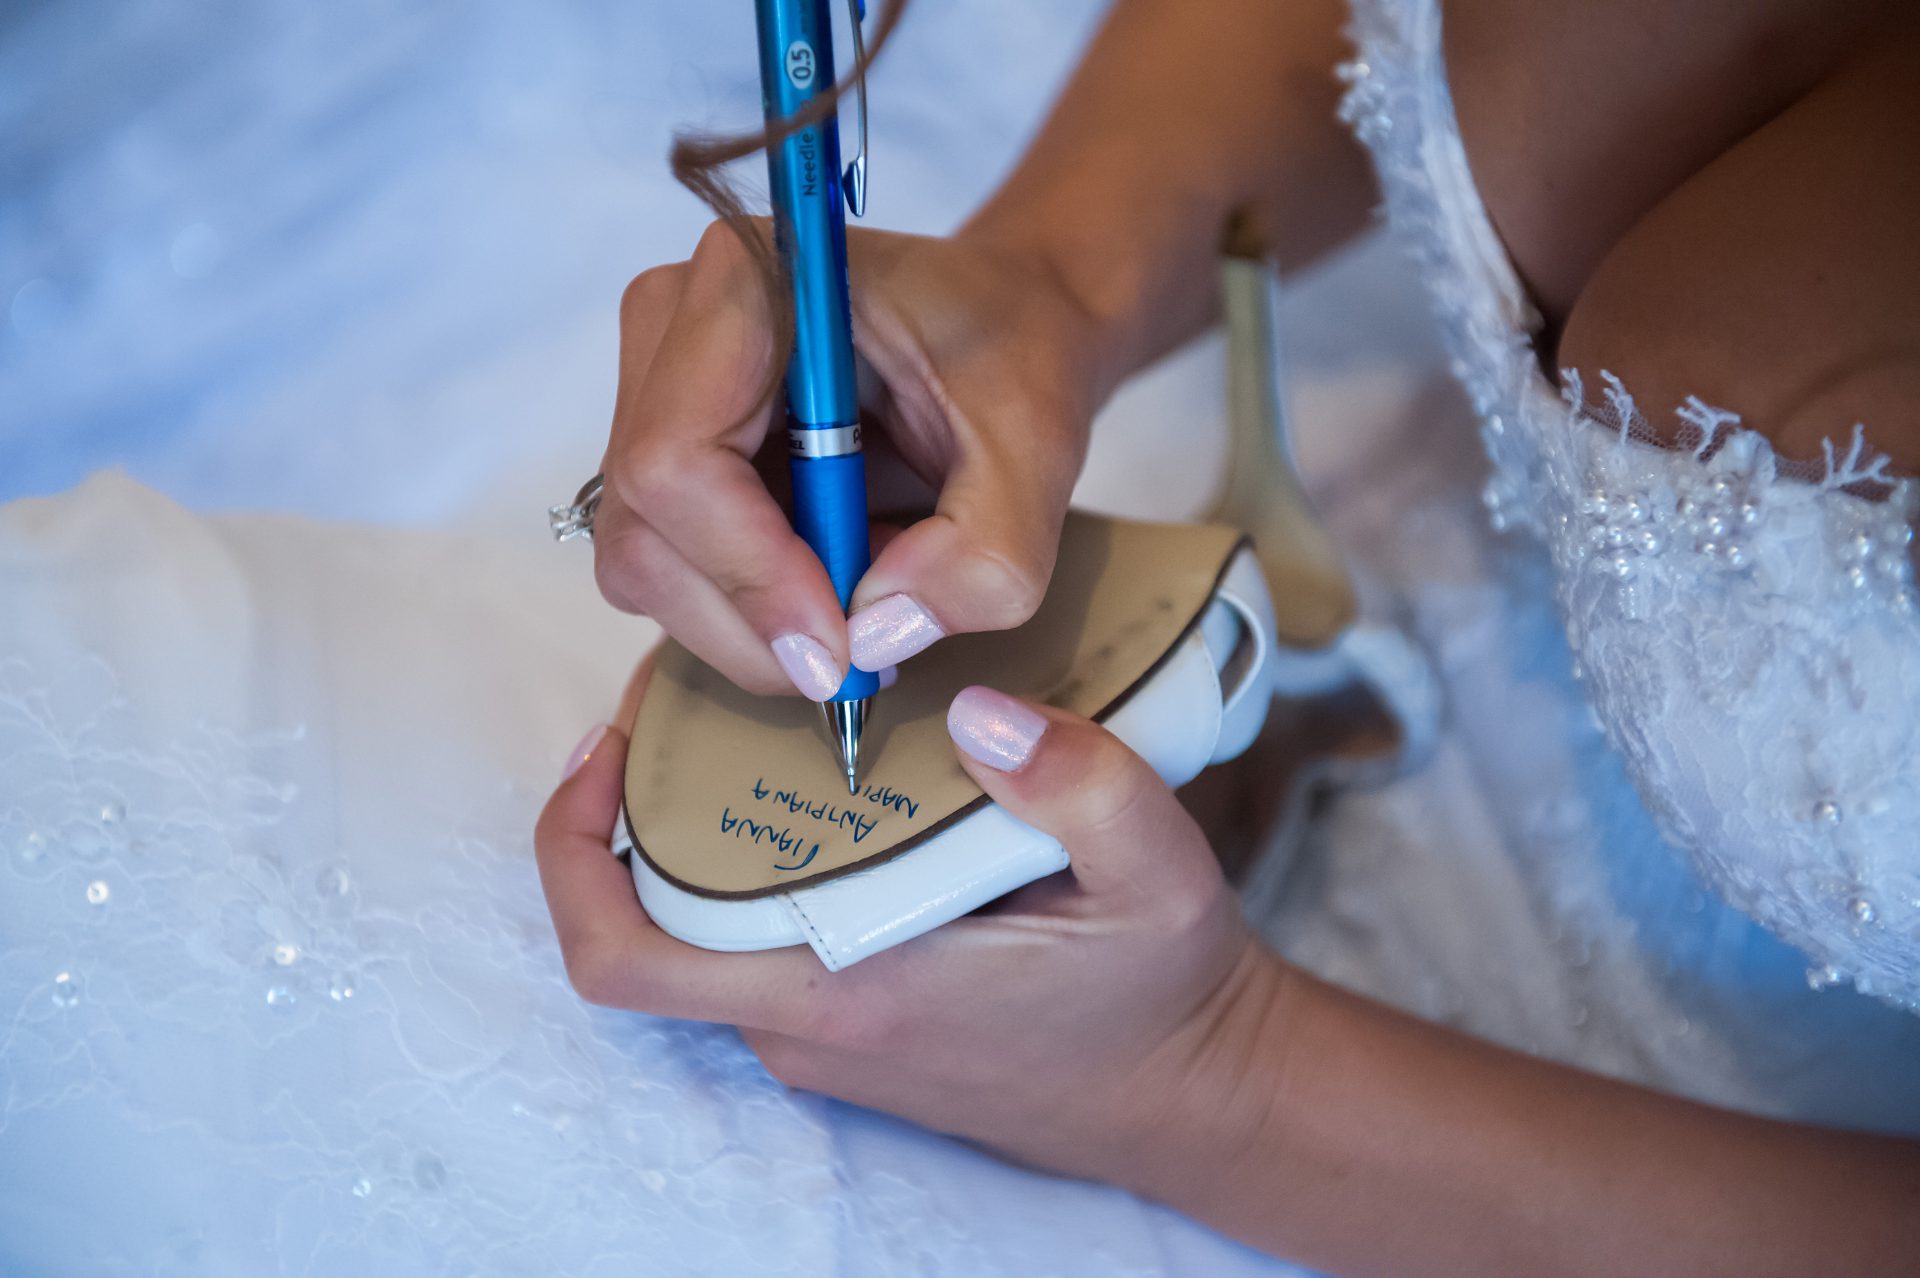 Η νύφη γράφει στο παπούτσι της τα ονόματα των φίλων της